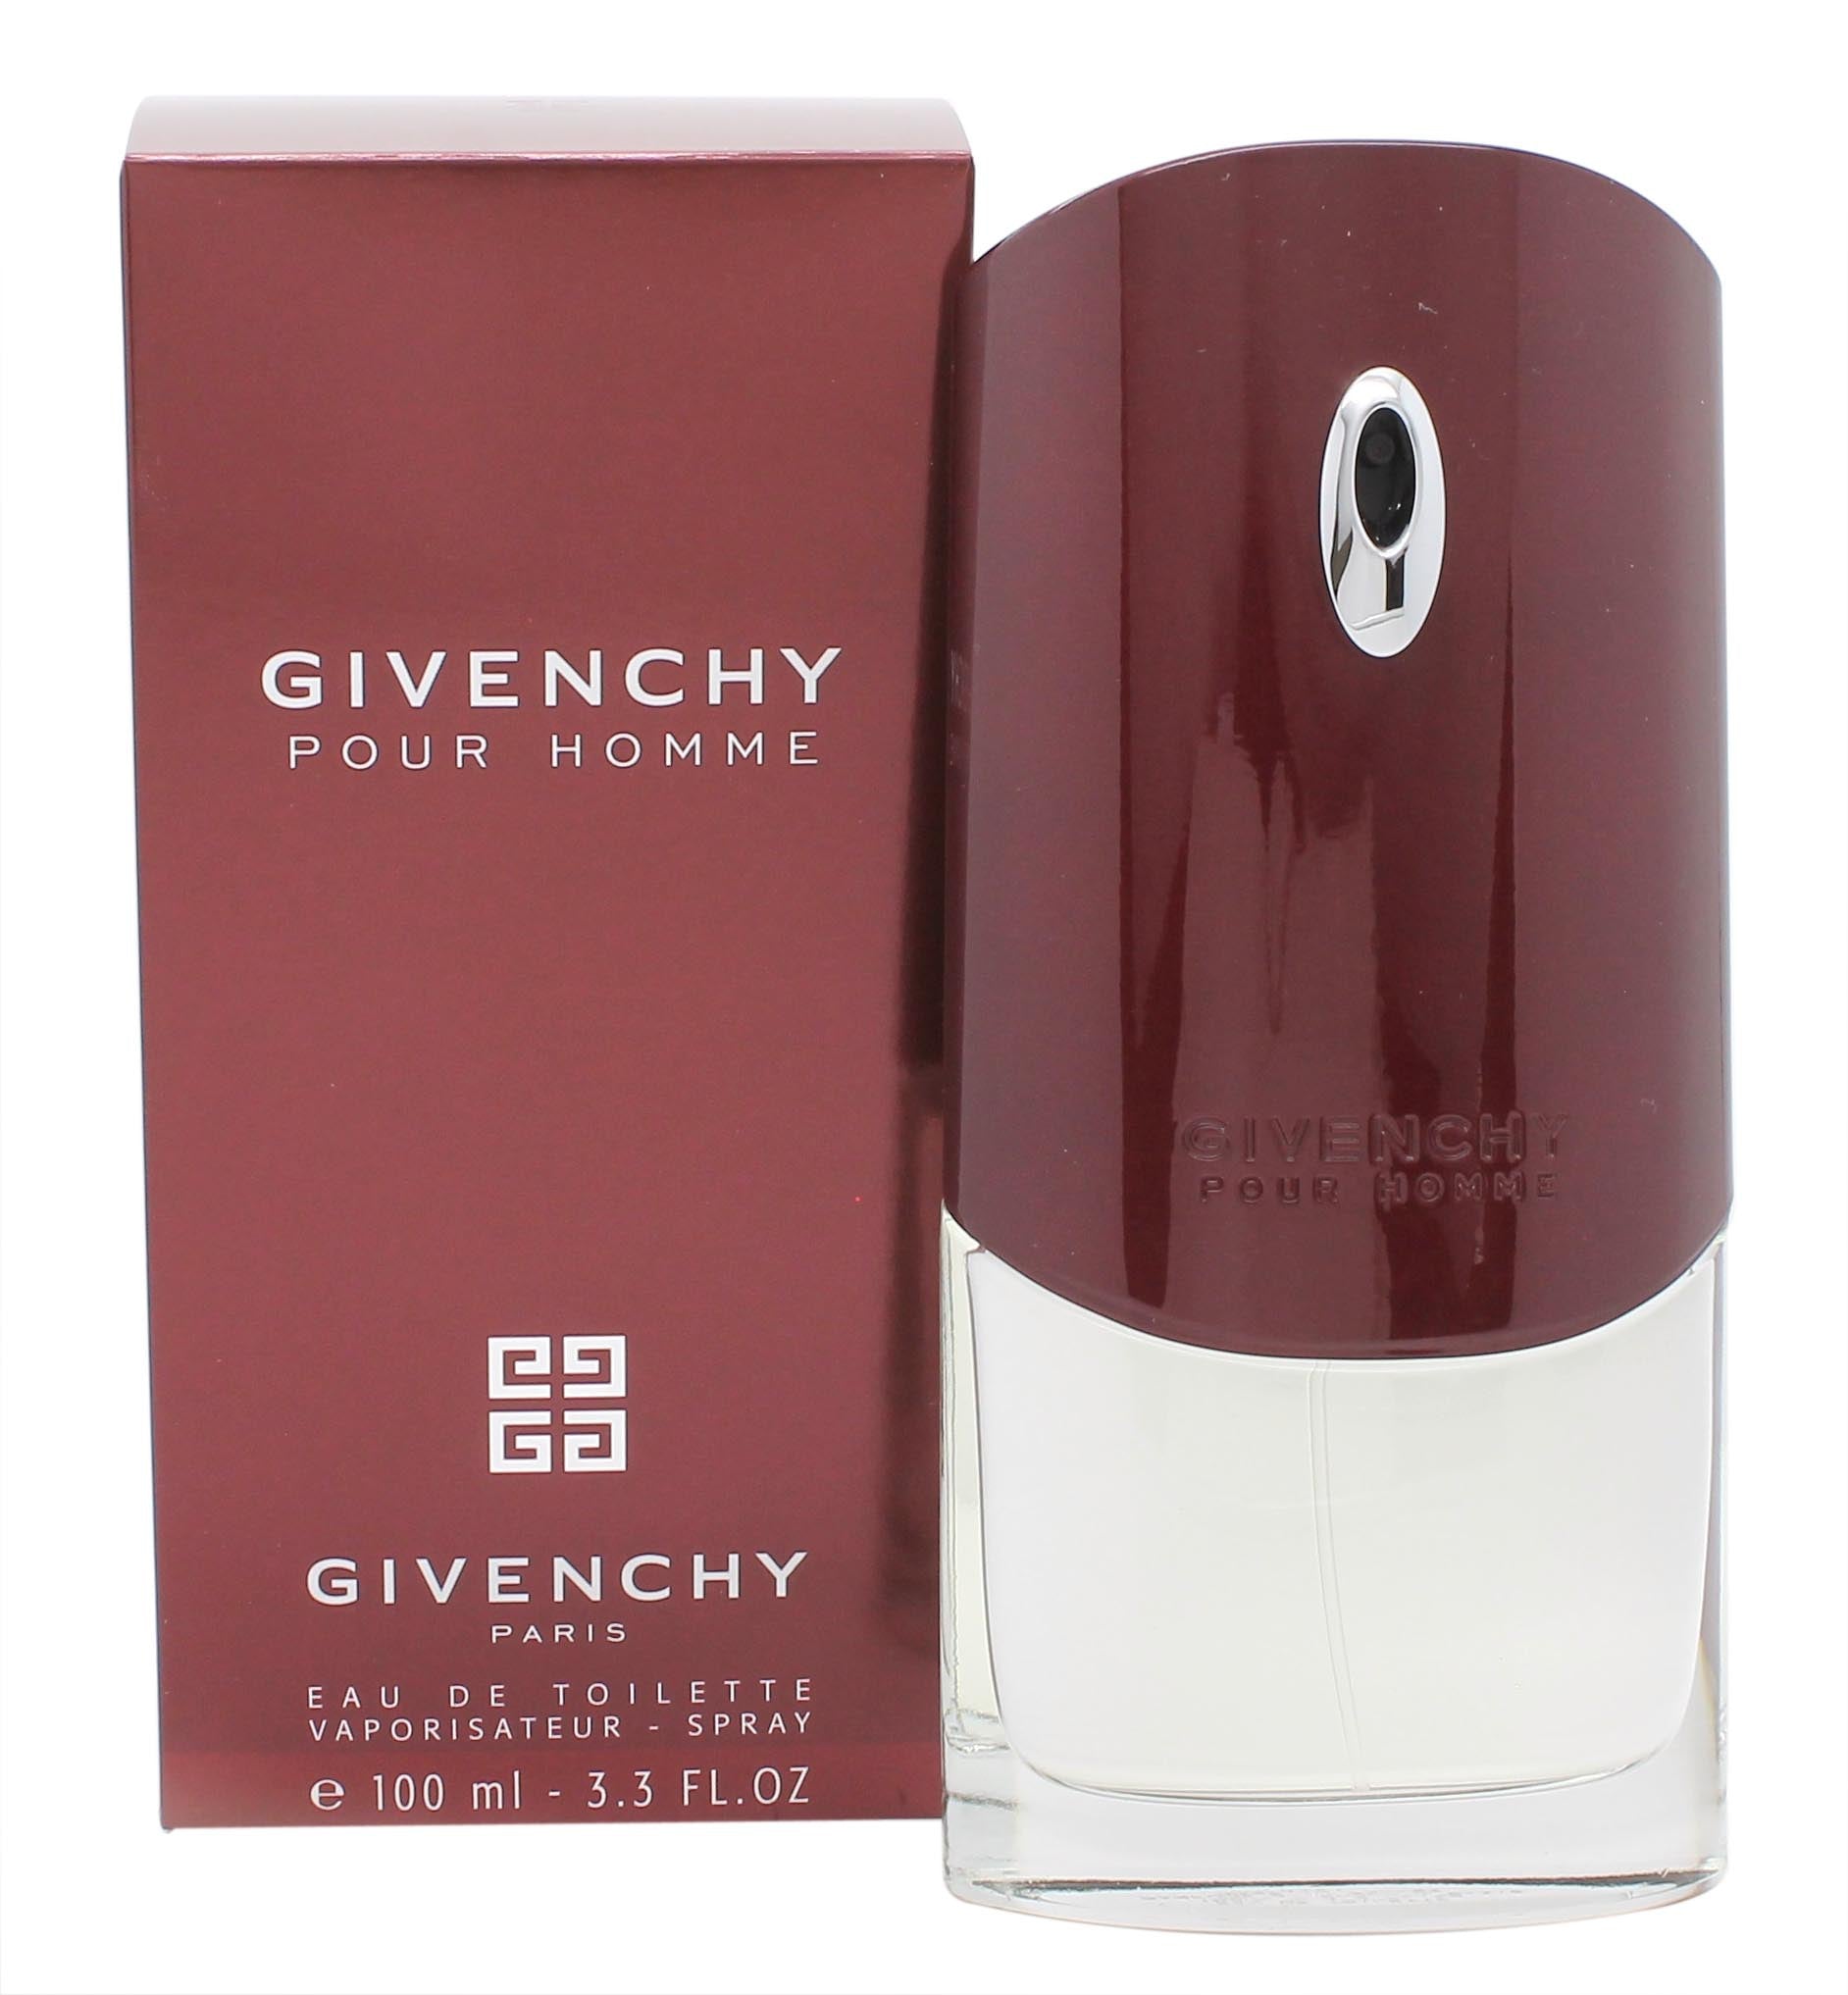 View Givenchy Pour Homme Eau De Toilette 100ml Spray information